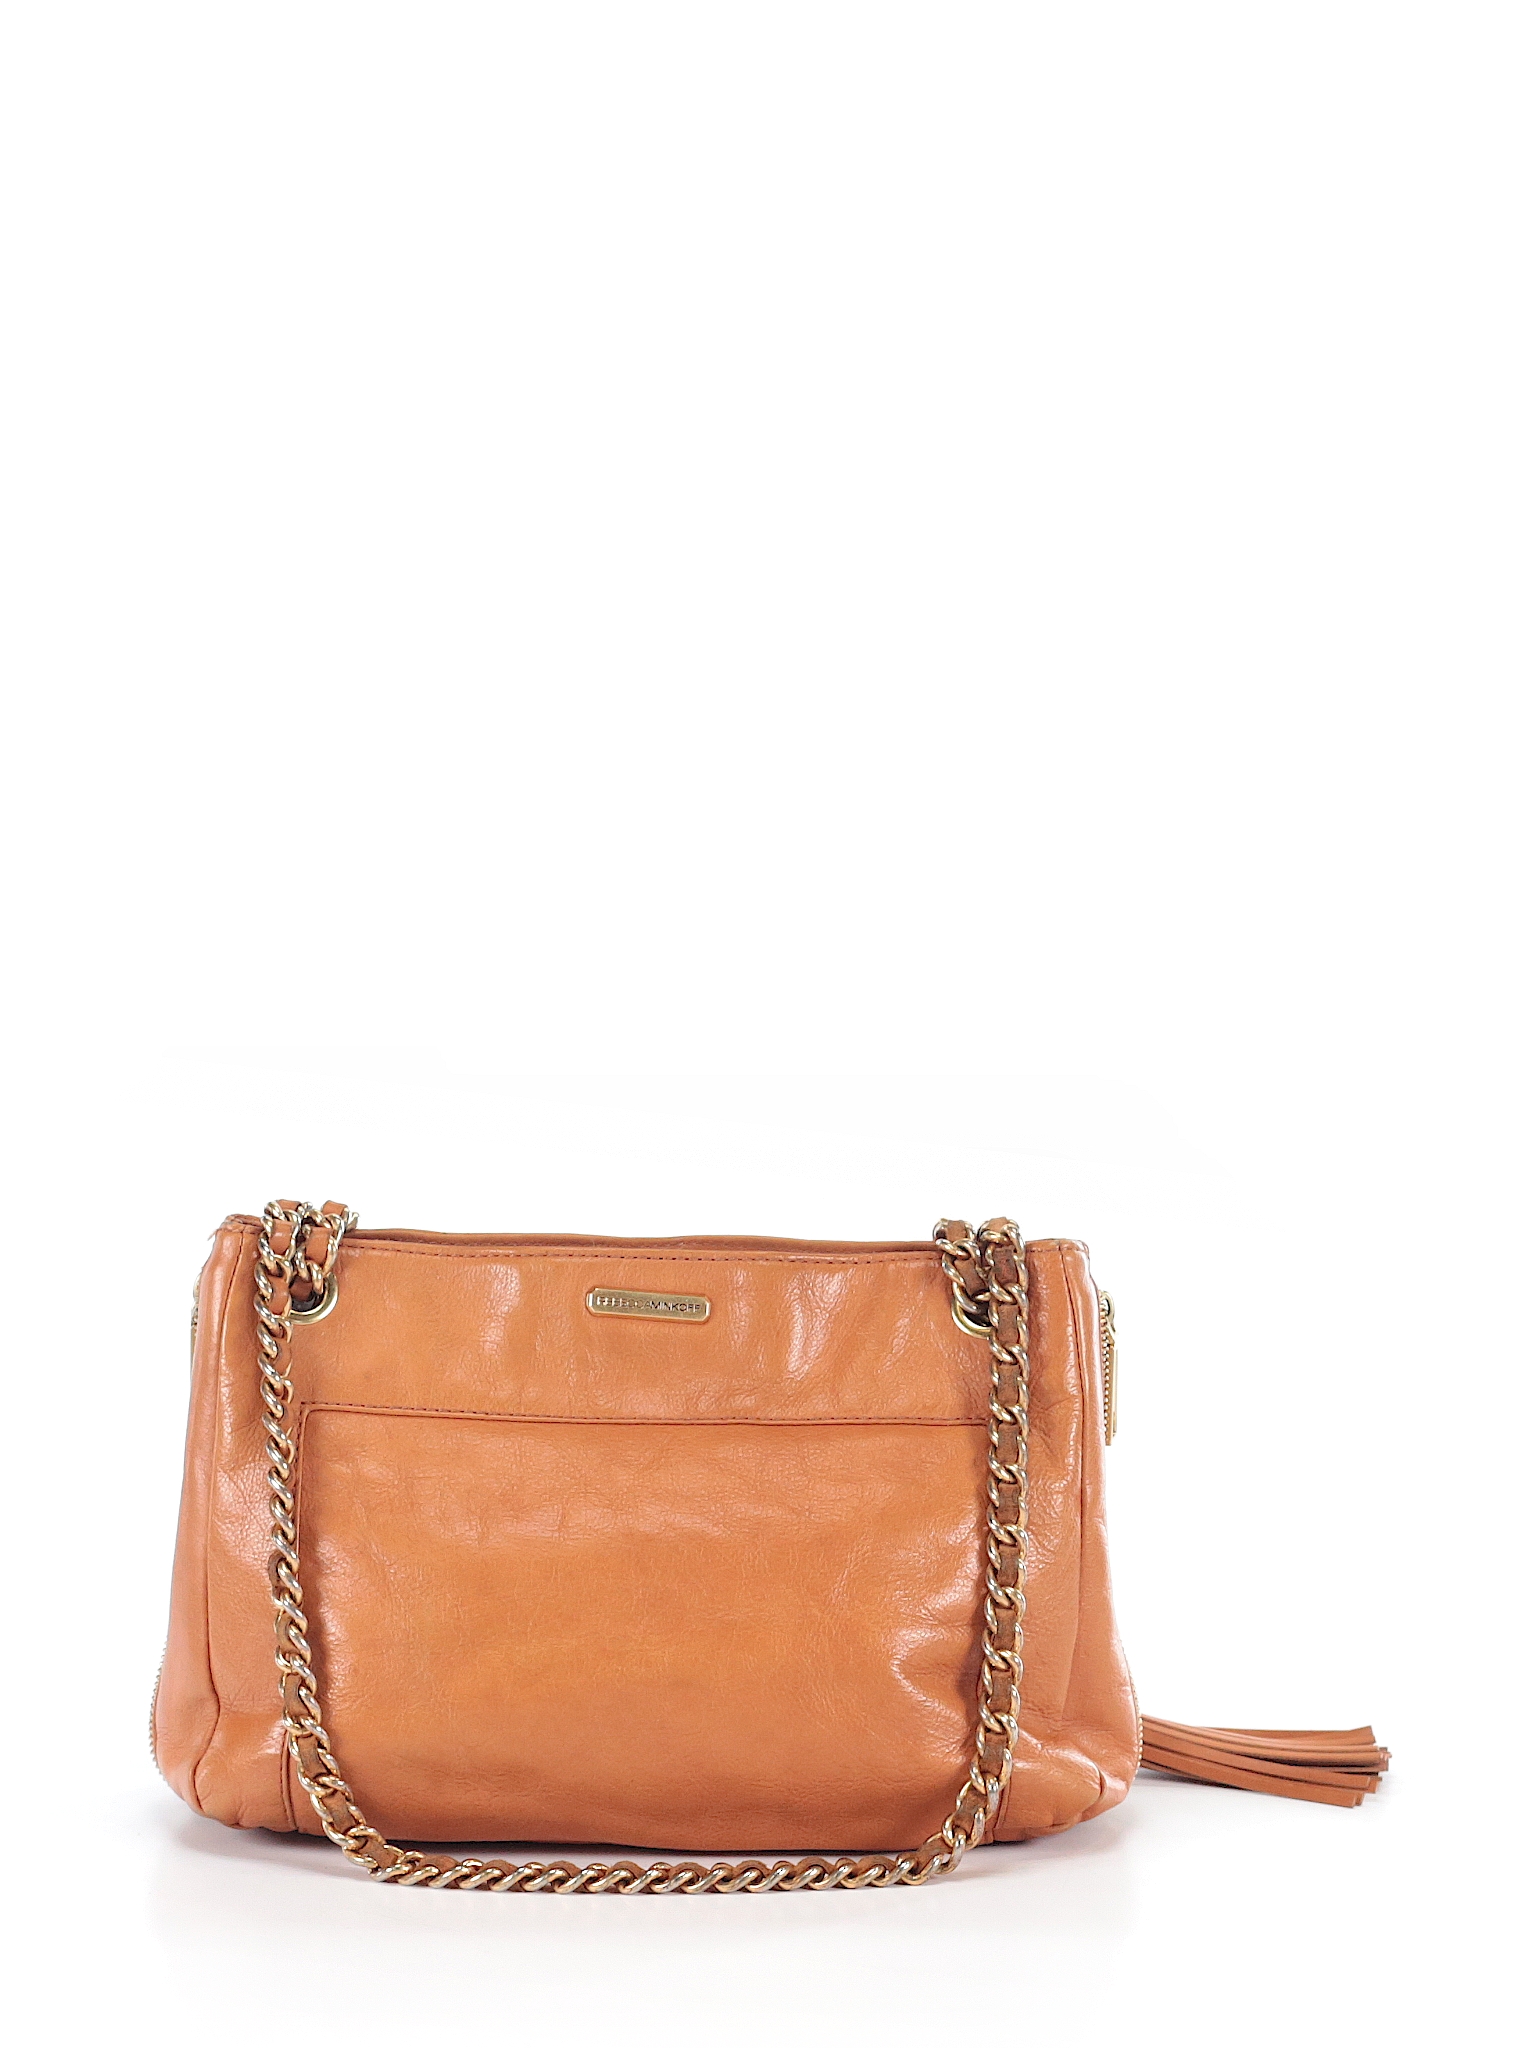 Rebecca Minkoff Solid Tan Leather Shoulder Bag One Size - 84% off | thredUP